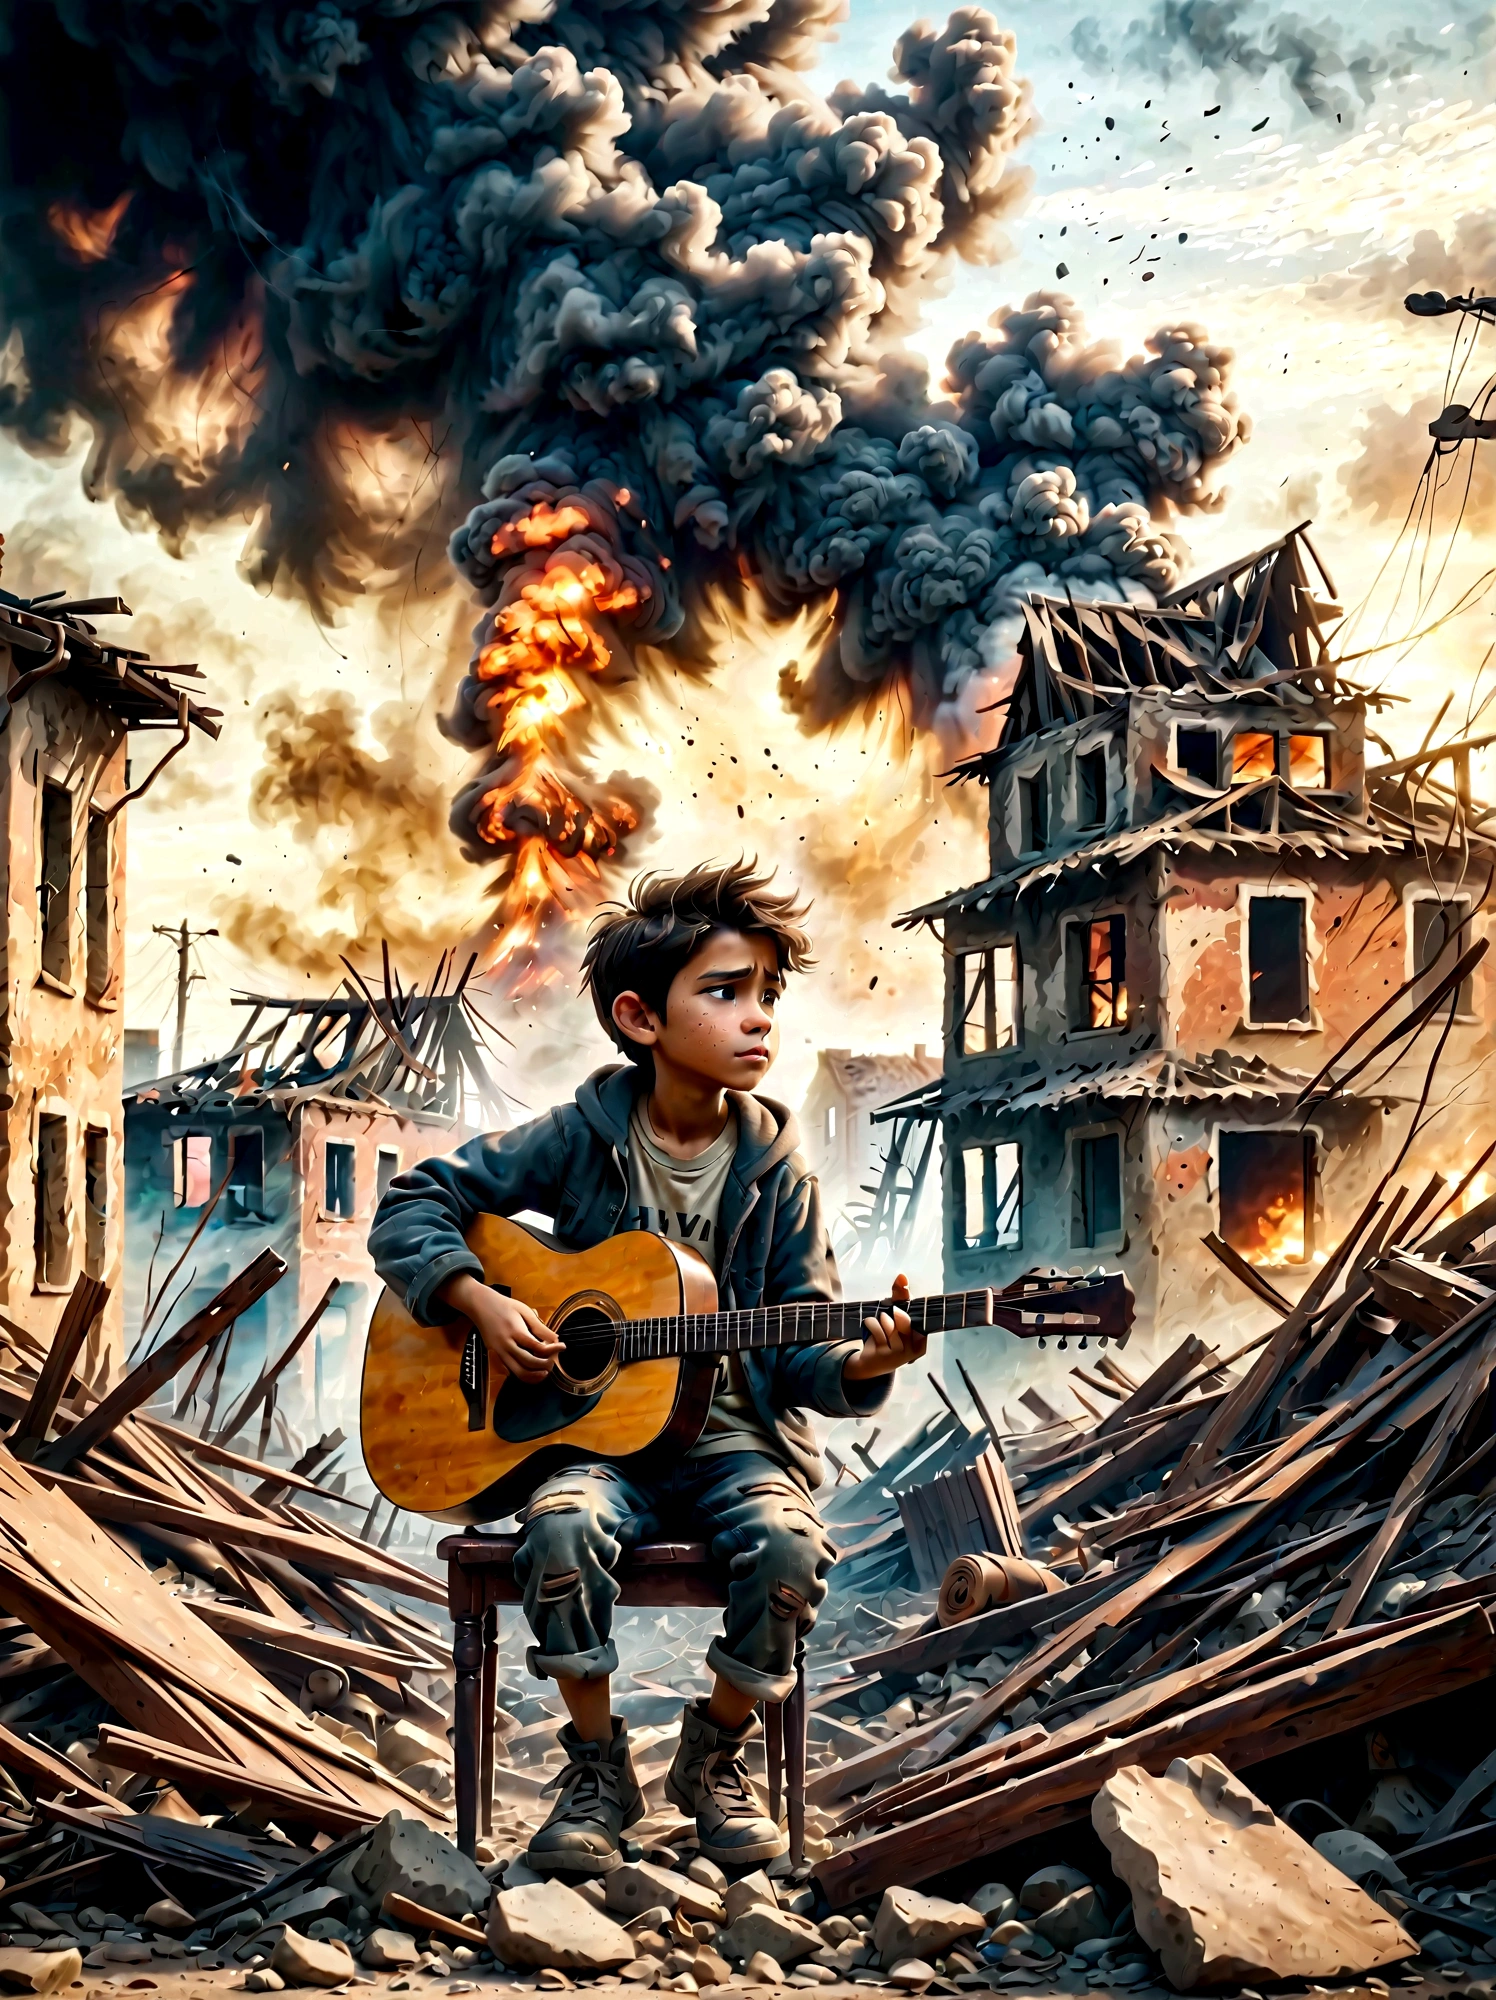 戦争で荒廃した, 煙の廃墟, 子供がギターを弾いている. このシーンは、周囲の荒廃と、 . 遺跡には瓦礫や建物の残骸が溢れている, 背景には煙と火がある. 子供の表情は暗い, 厳しい現実を反映している. 全体的な雰囲気は感動的で感動的である, 落ち着いた色調とドラマチックな照明で、音楽が表現する荒廃と希望のきらめきを強調する.